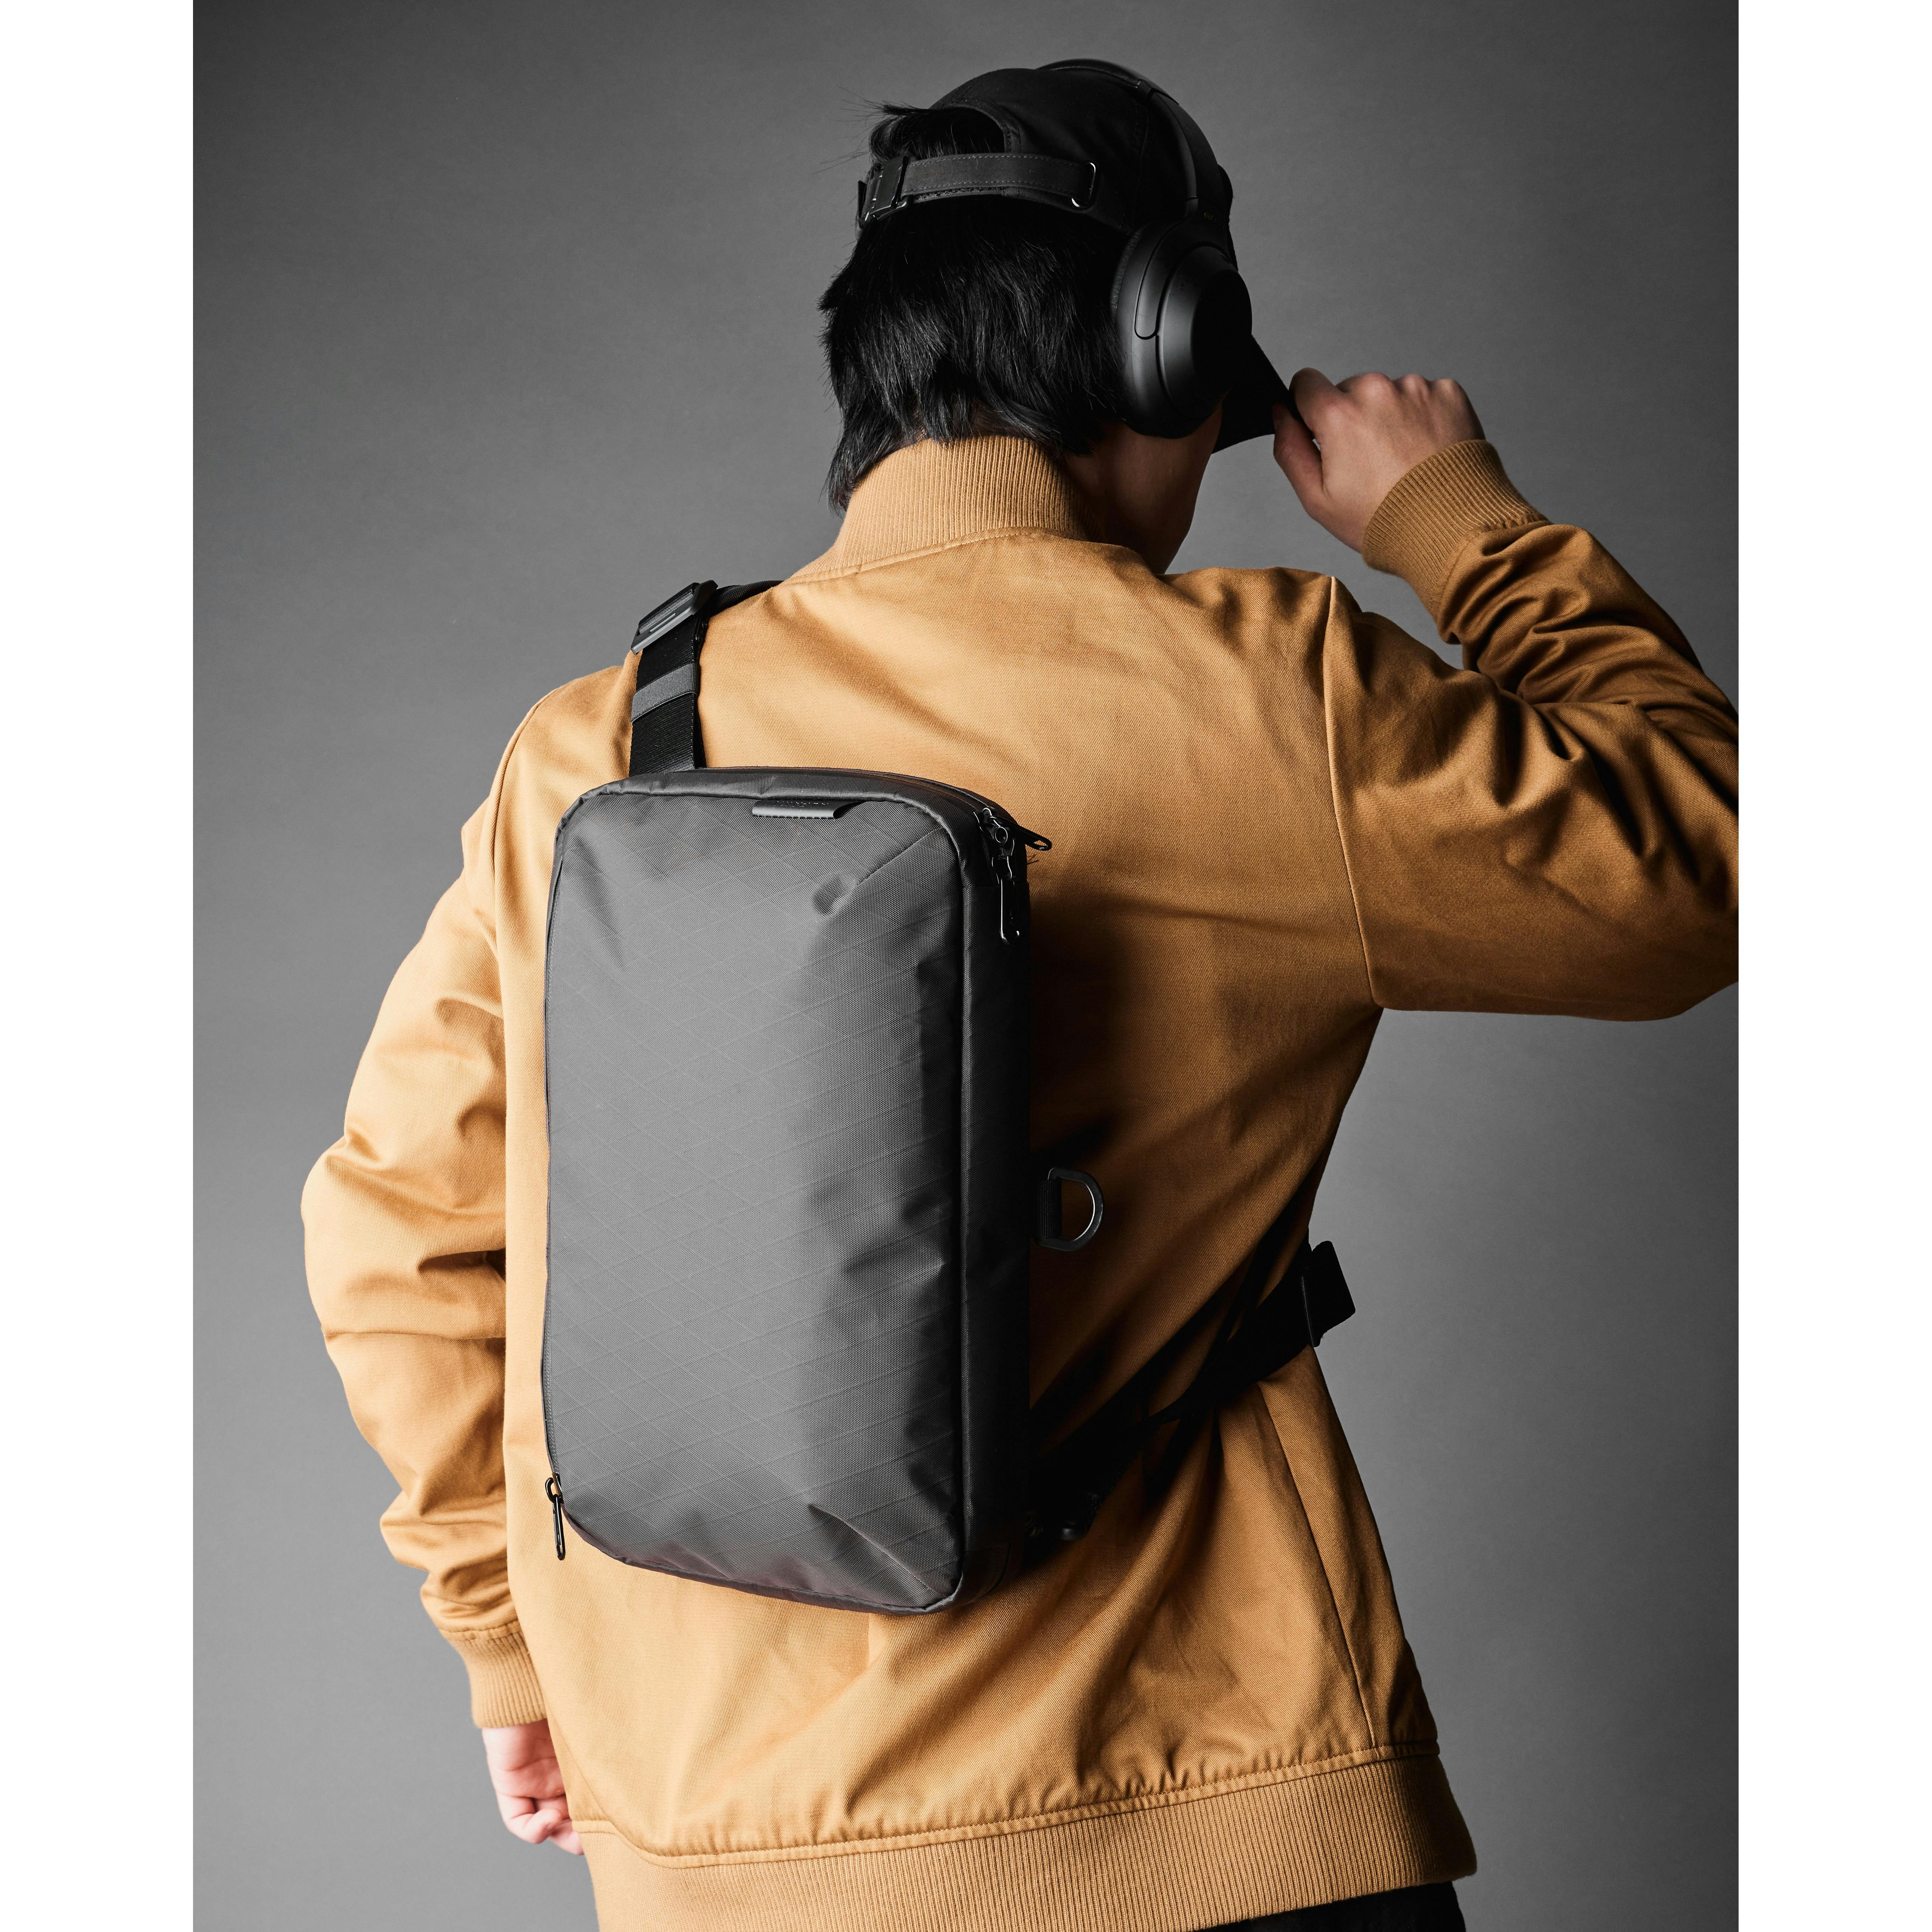 กระเป๋า Alpaka - Alpha Messenger สี Graphite Grey